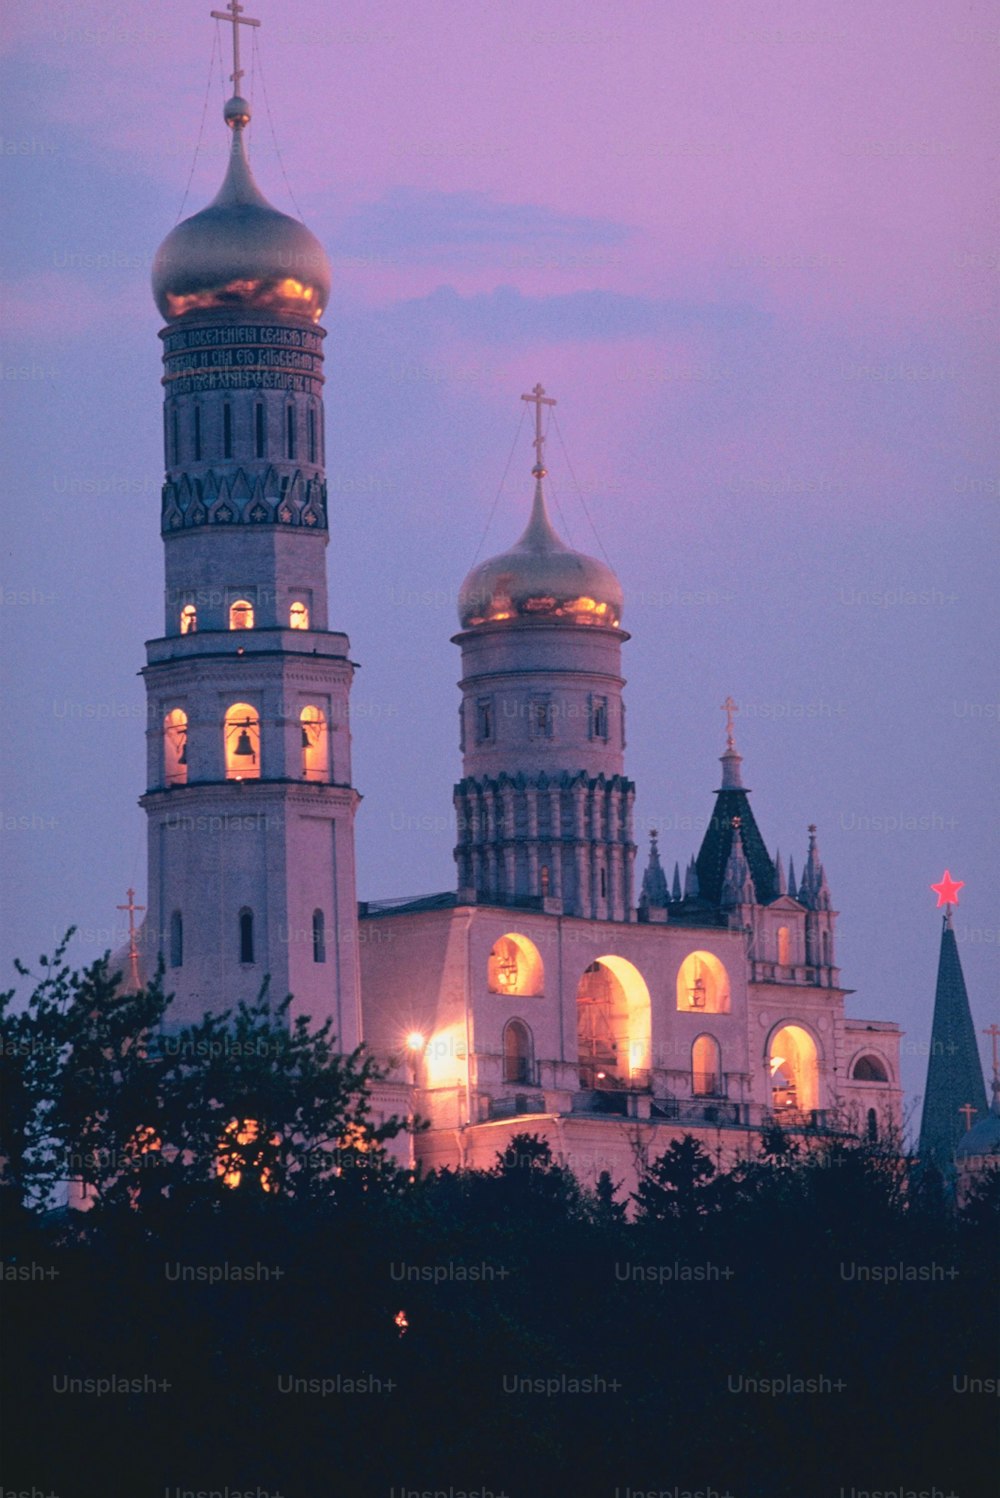 밤에는 두 개의 탑이 있는 커다란 흰색 건물